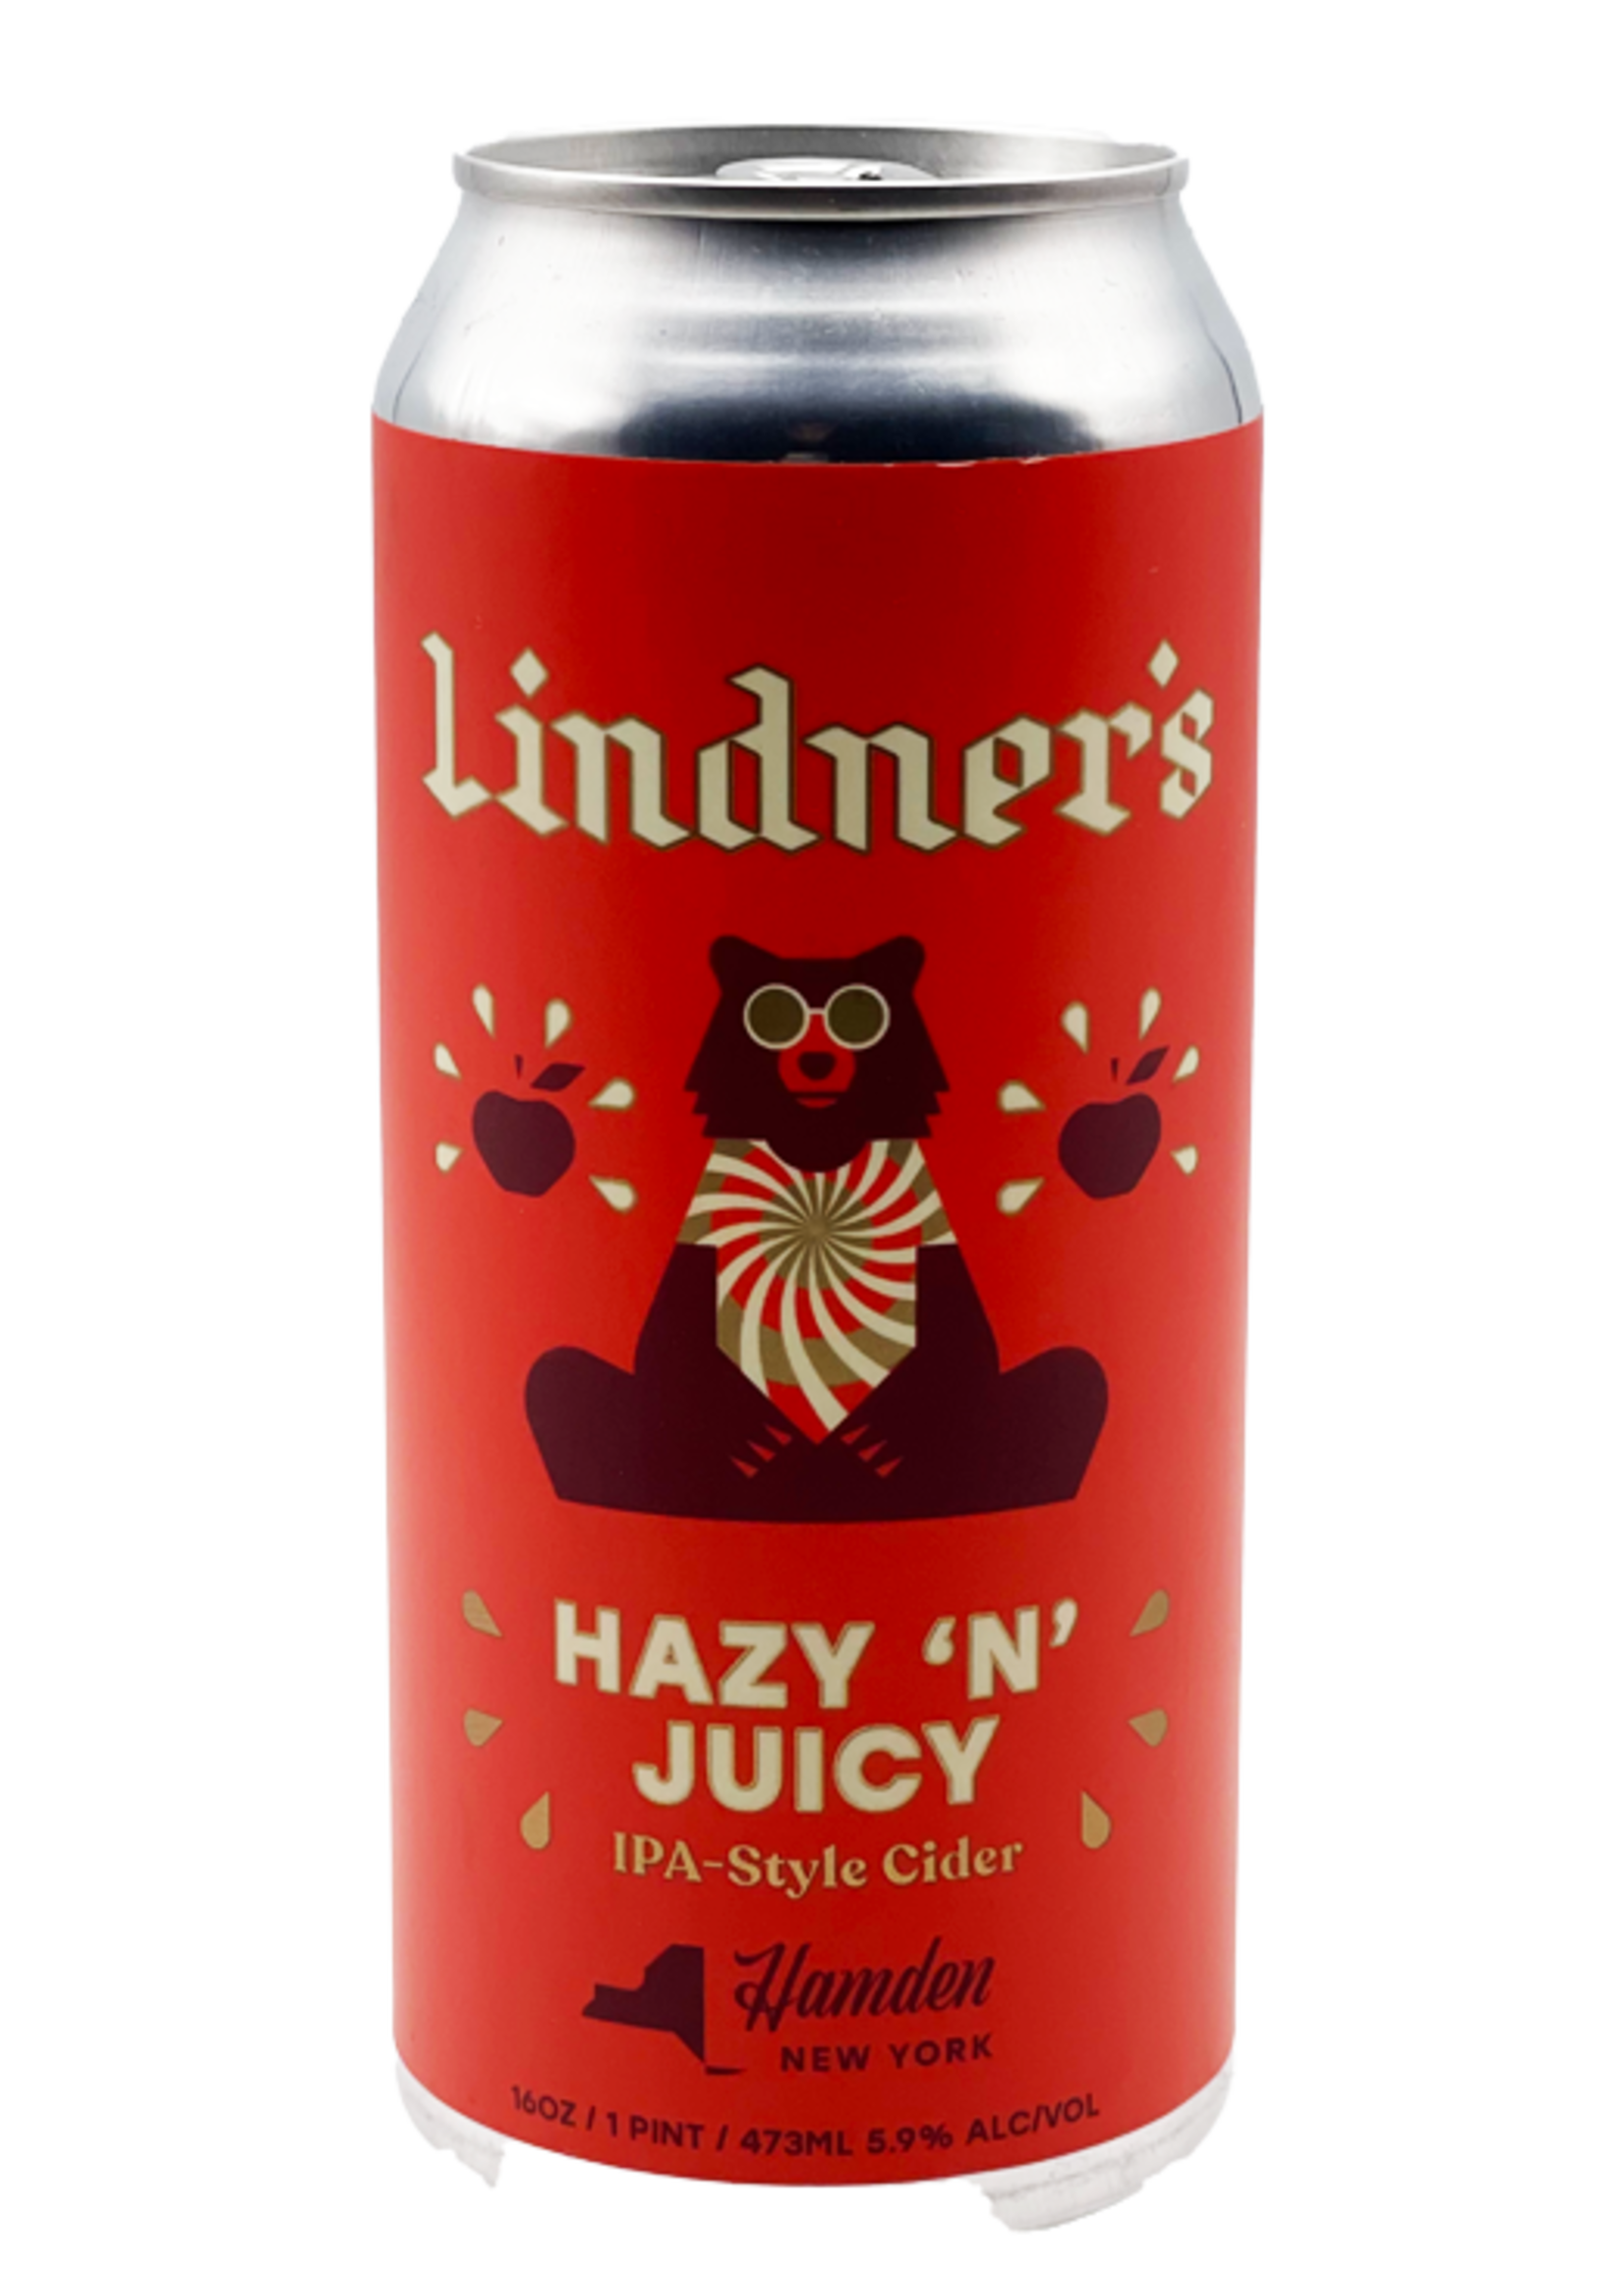 Lindner's Hazy n' Juicy Cider can